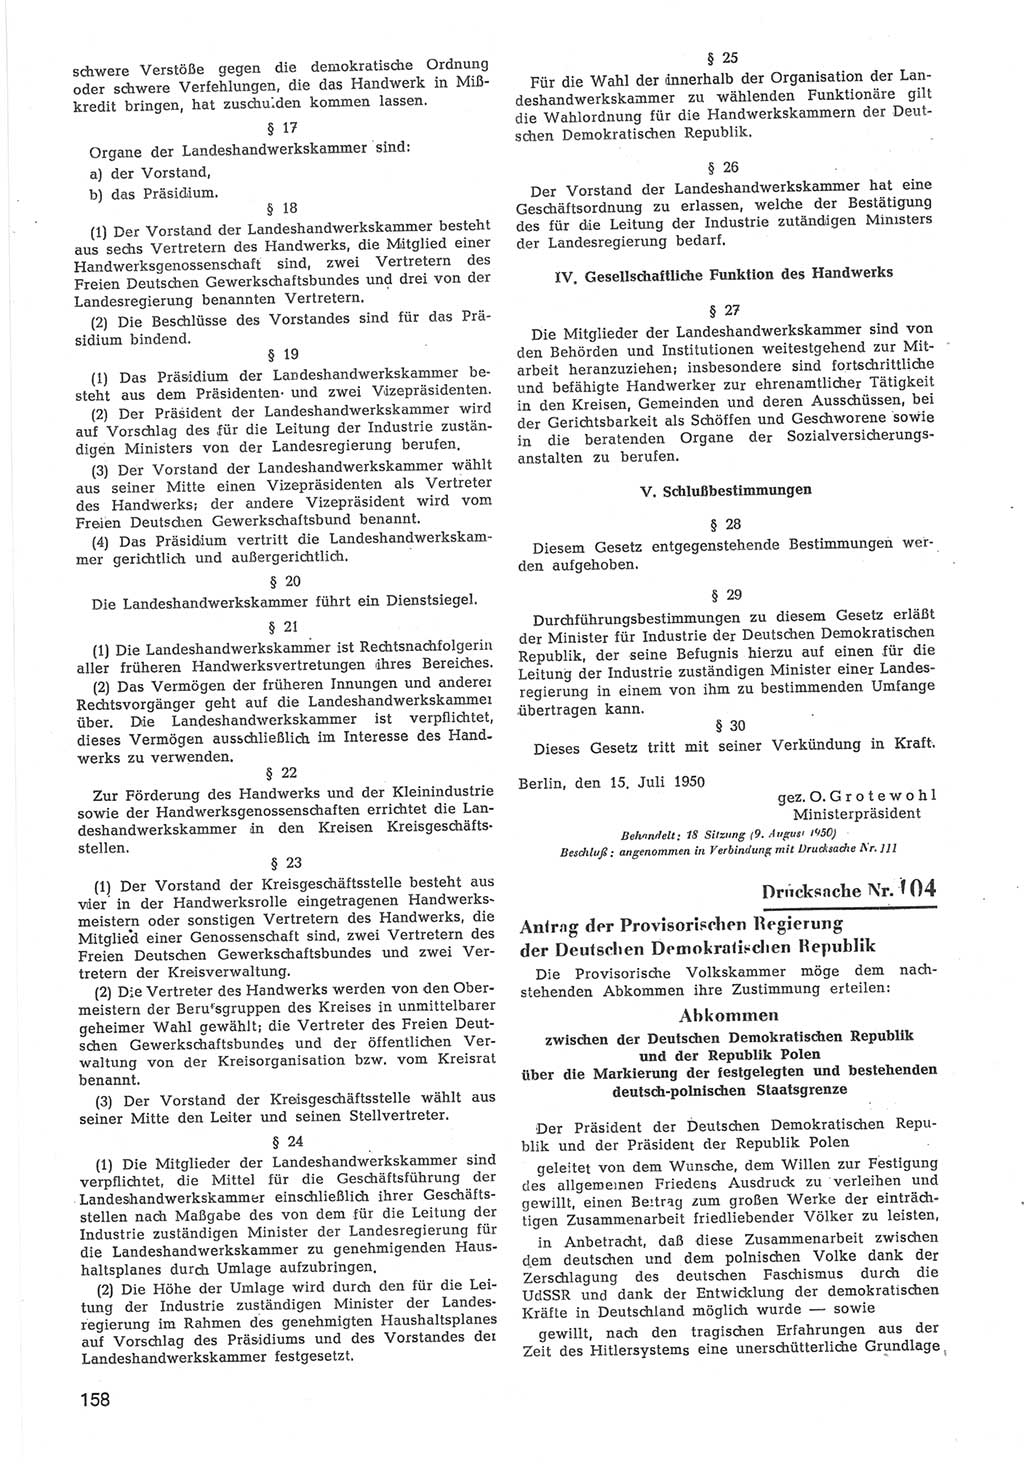 Provisorische Volkskammer (VK) der Deutschen Demokratischen Republik (DDR) 1949-1950, Dokument 760 (Prov. VK DDR 1949-1950, Dok. 760)